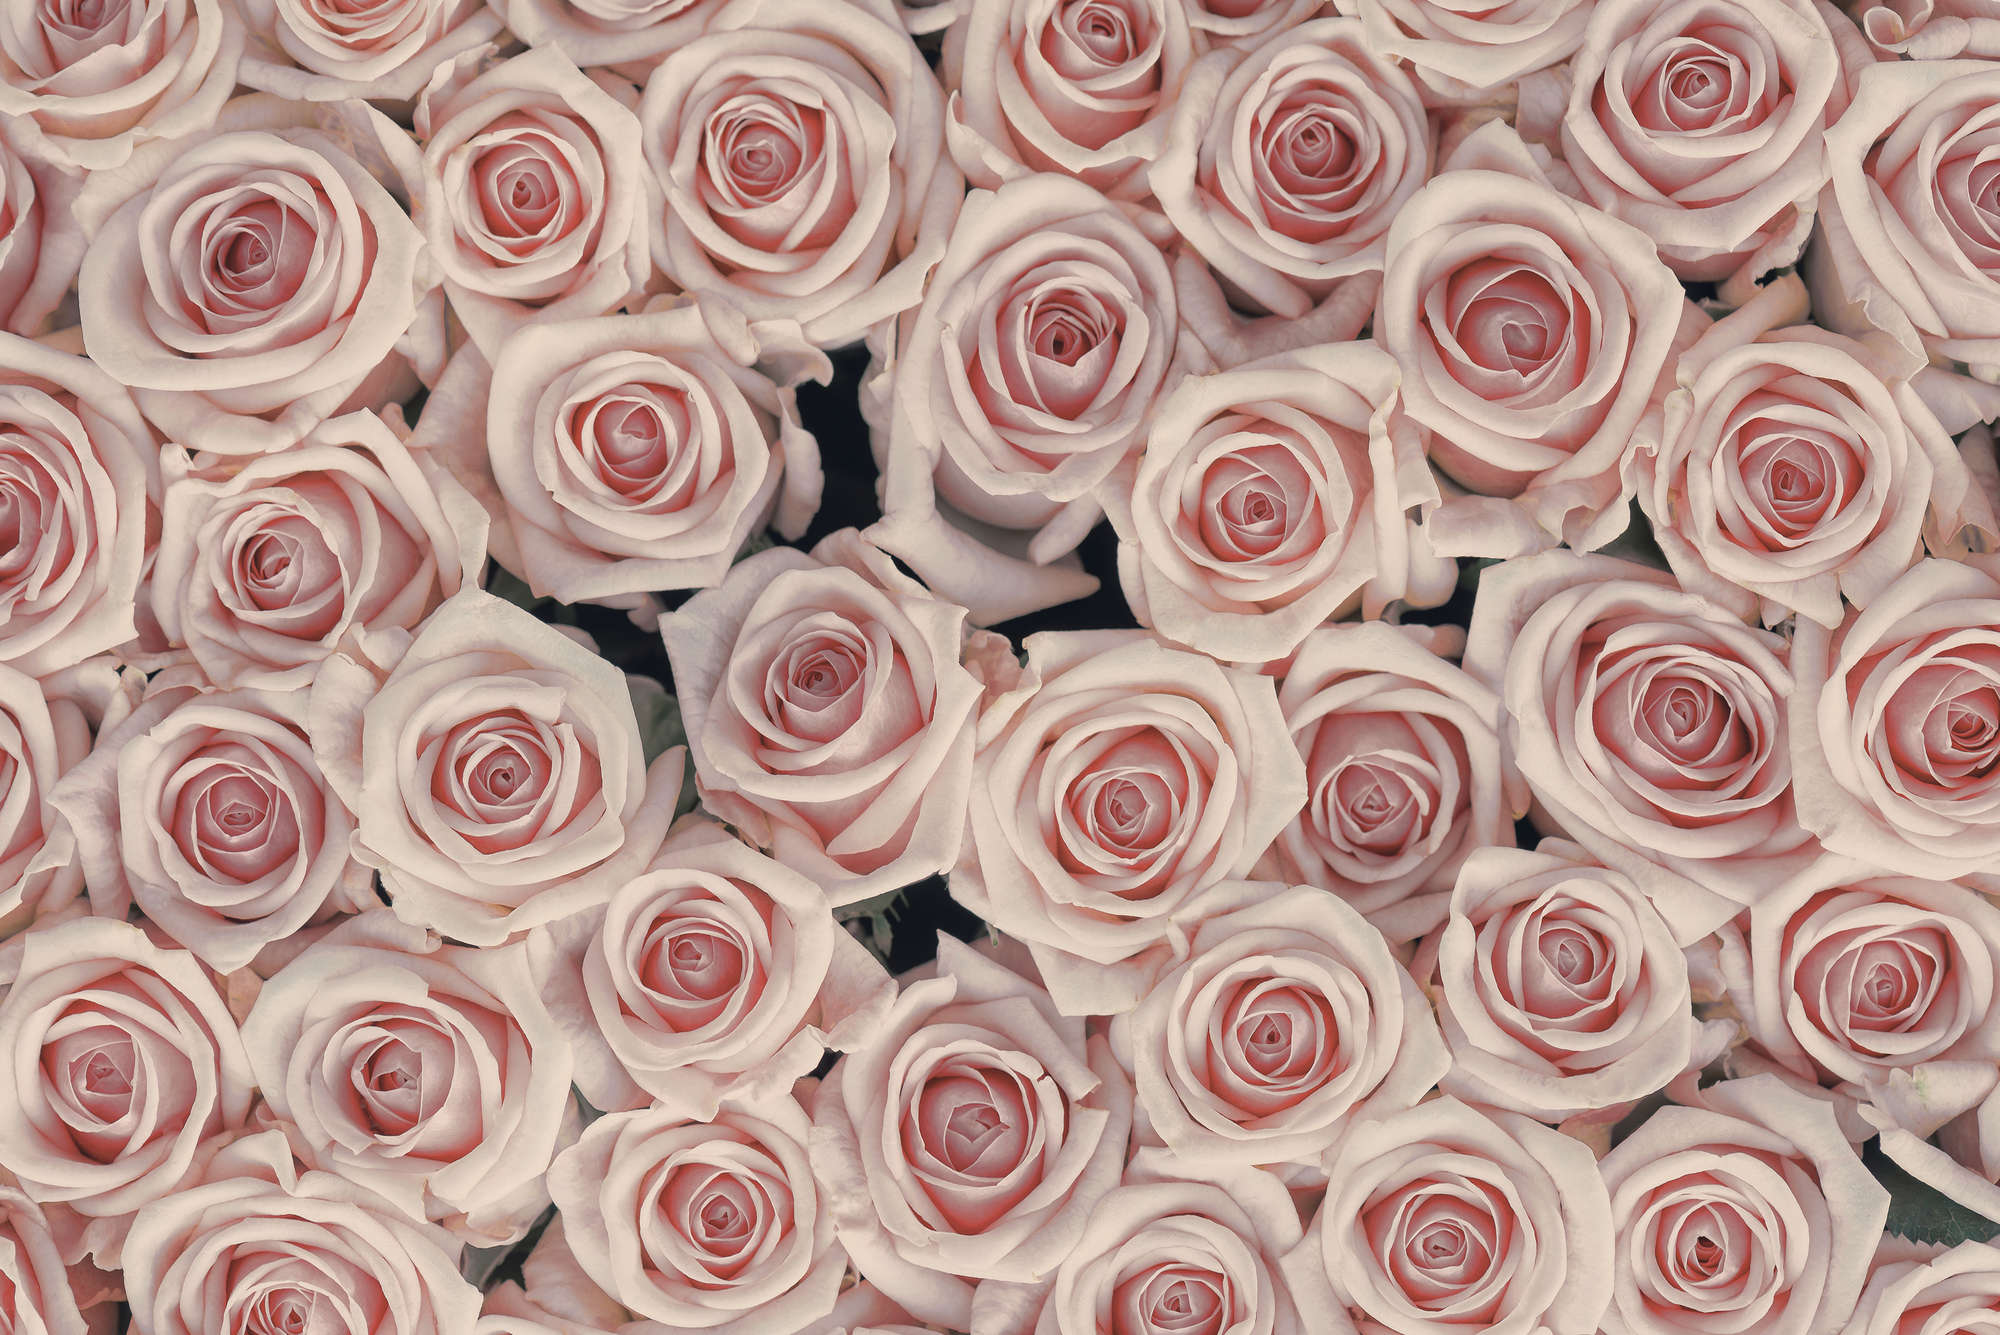             Carta da parati per piante Rose rosa e bianche su tessuto liscio perlato
        